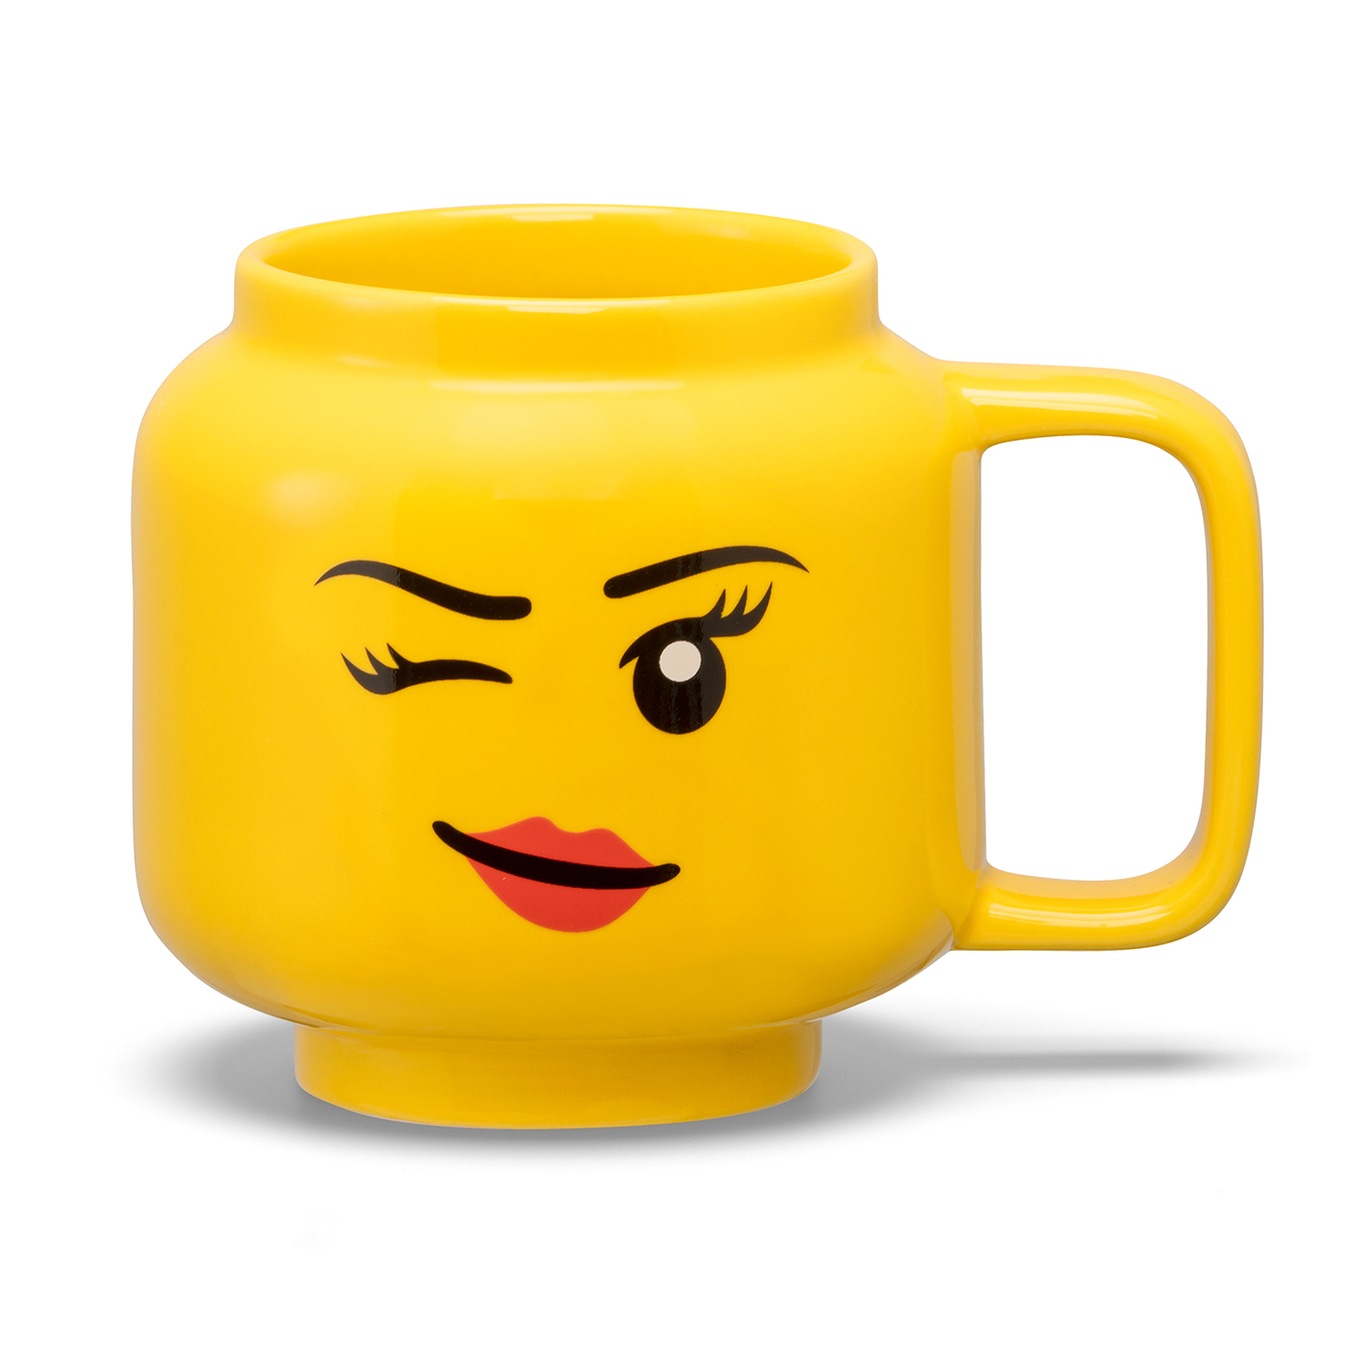 LEGO Tasse Winking Girl S, 25 cl